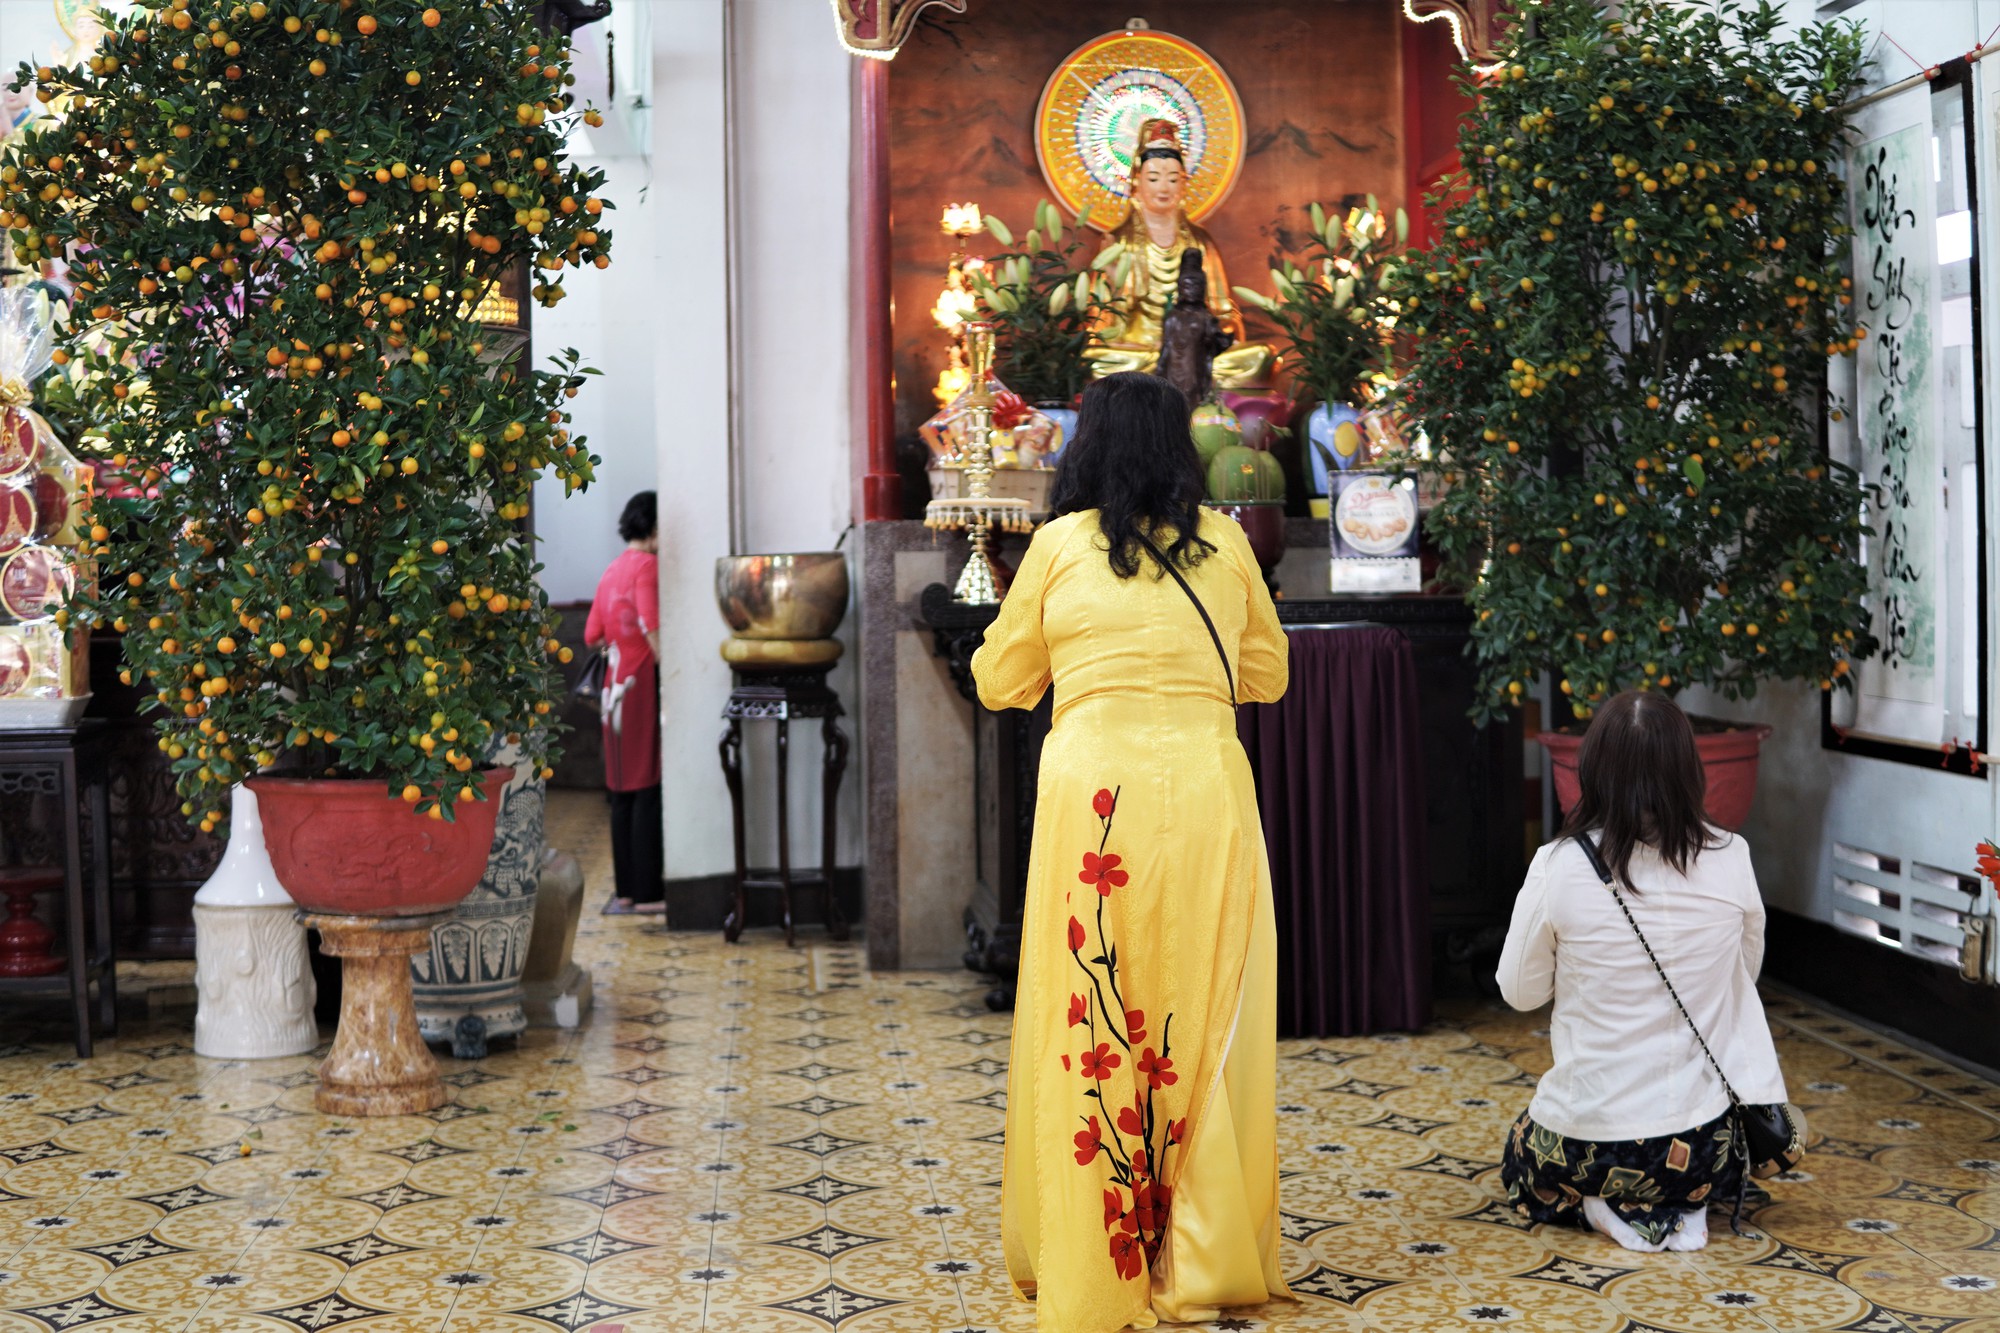 Người dân TP HCM tấp nập đi lễ chùa mùng 1 Tết, cầu năm mới bình an  - Ảnh 5.